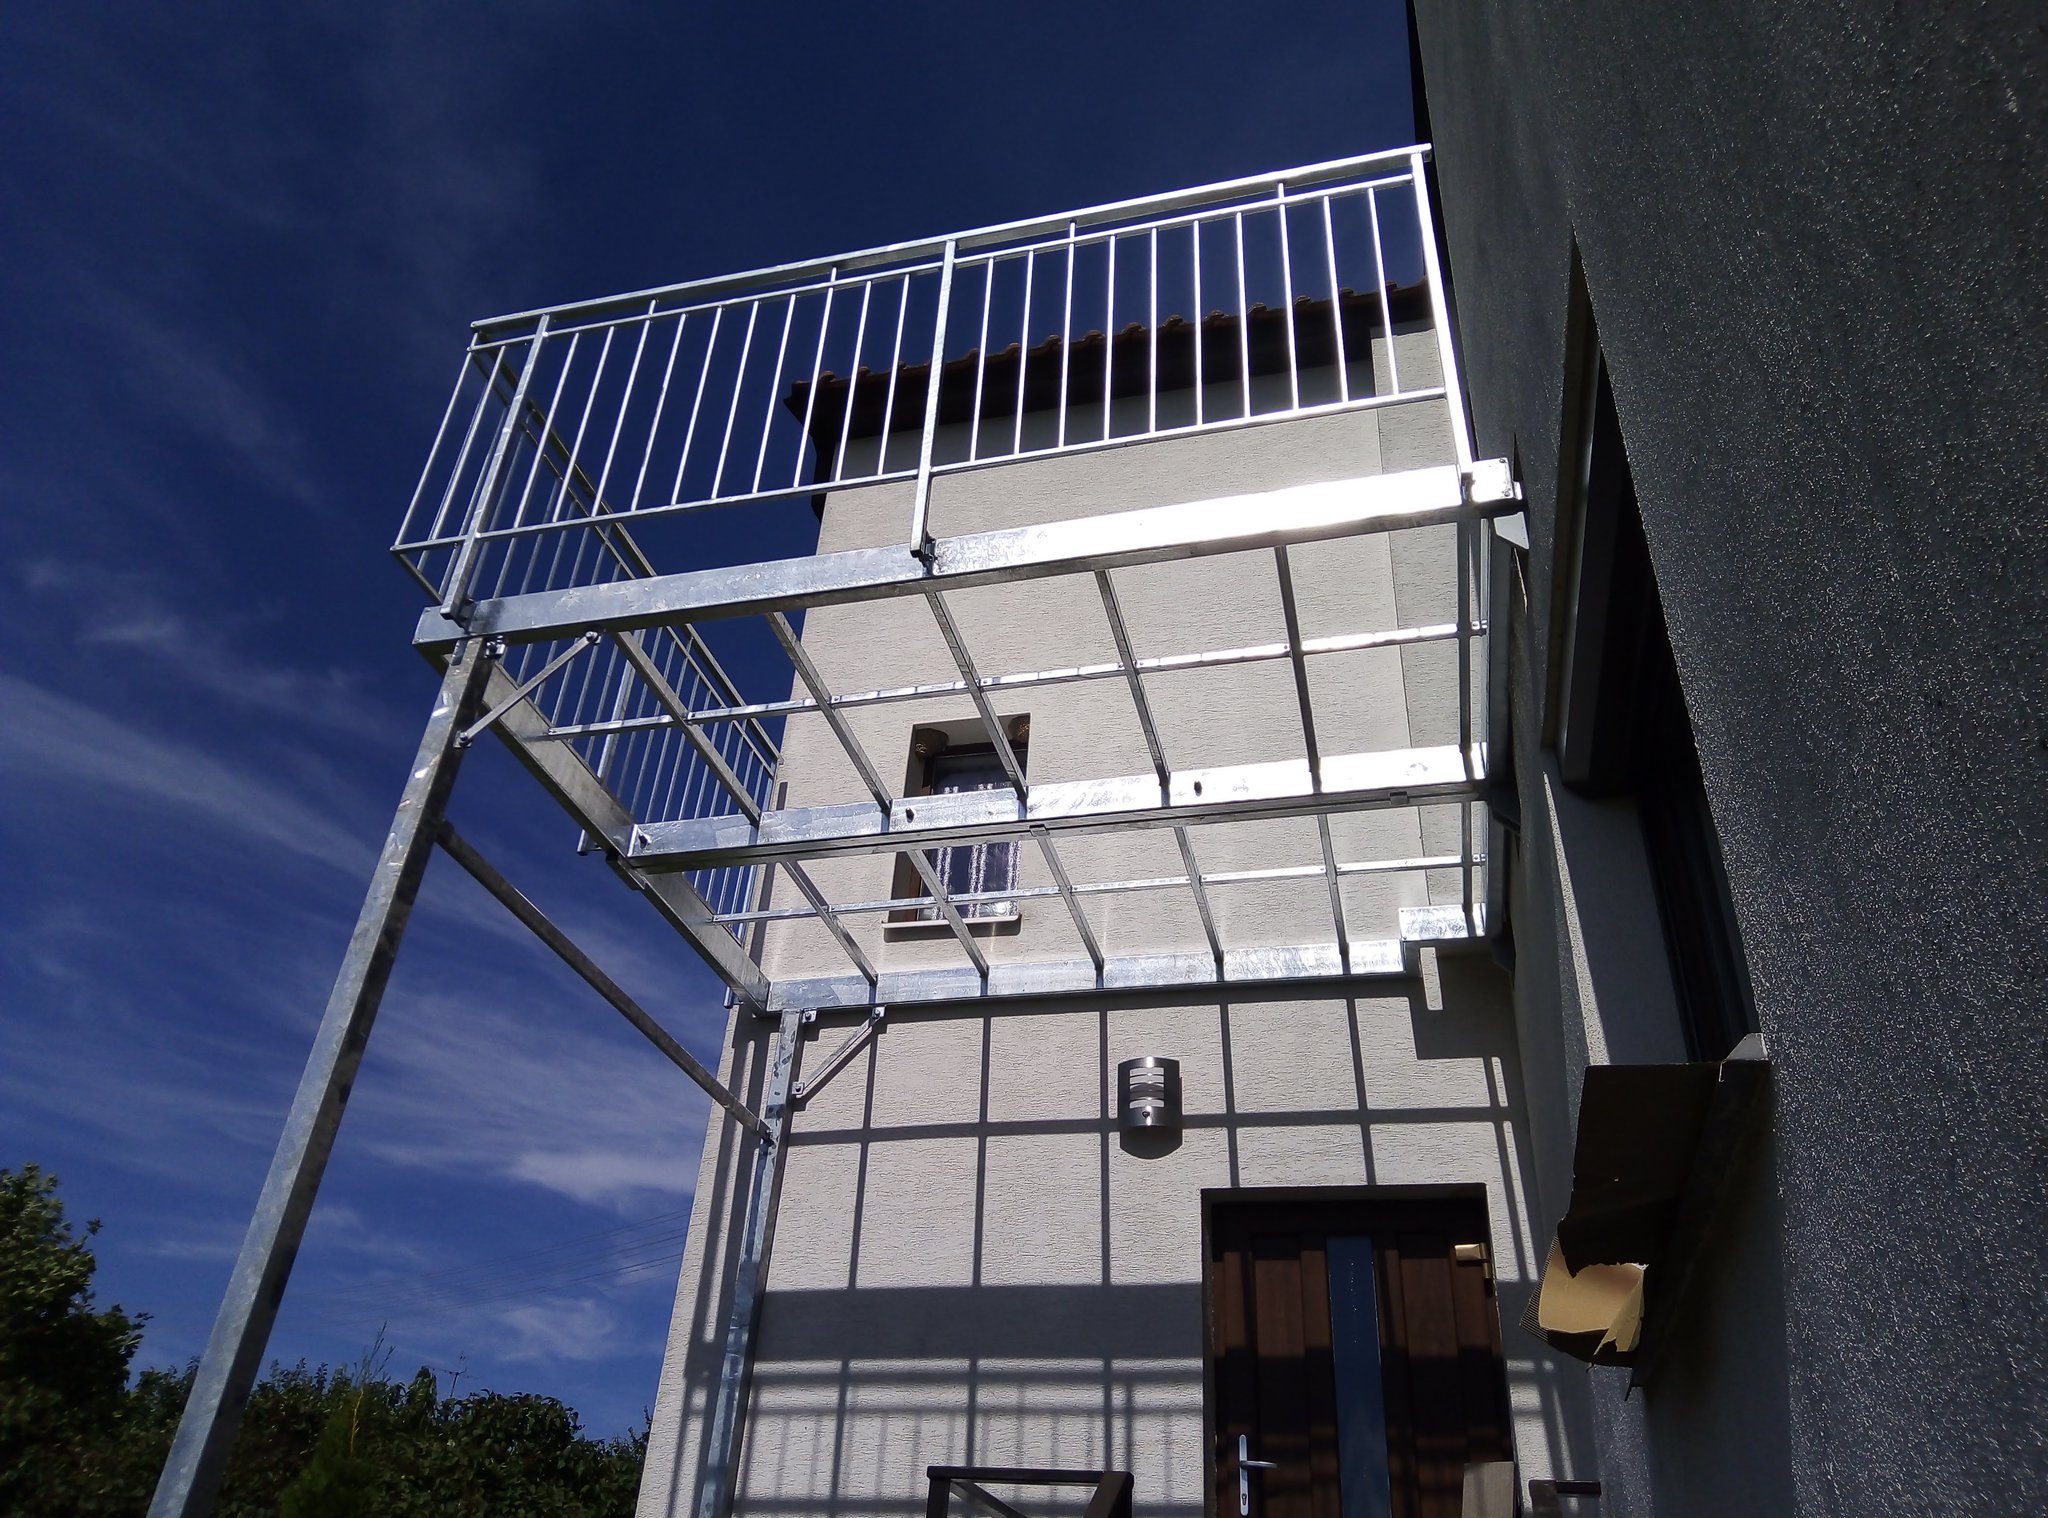 Terrasse - Balkon, Ausführung mit Geländer, feuerverzinkt